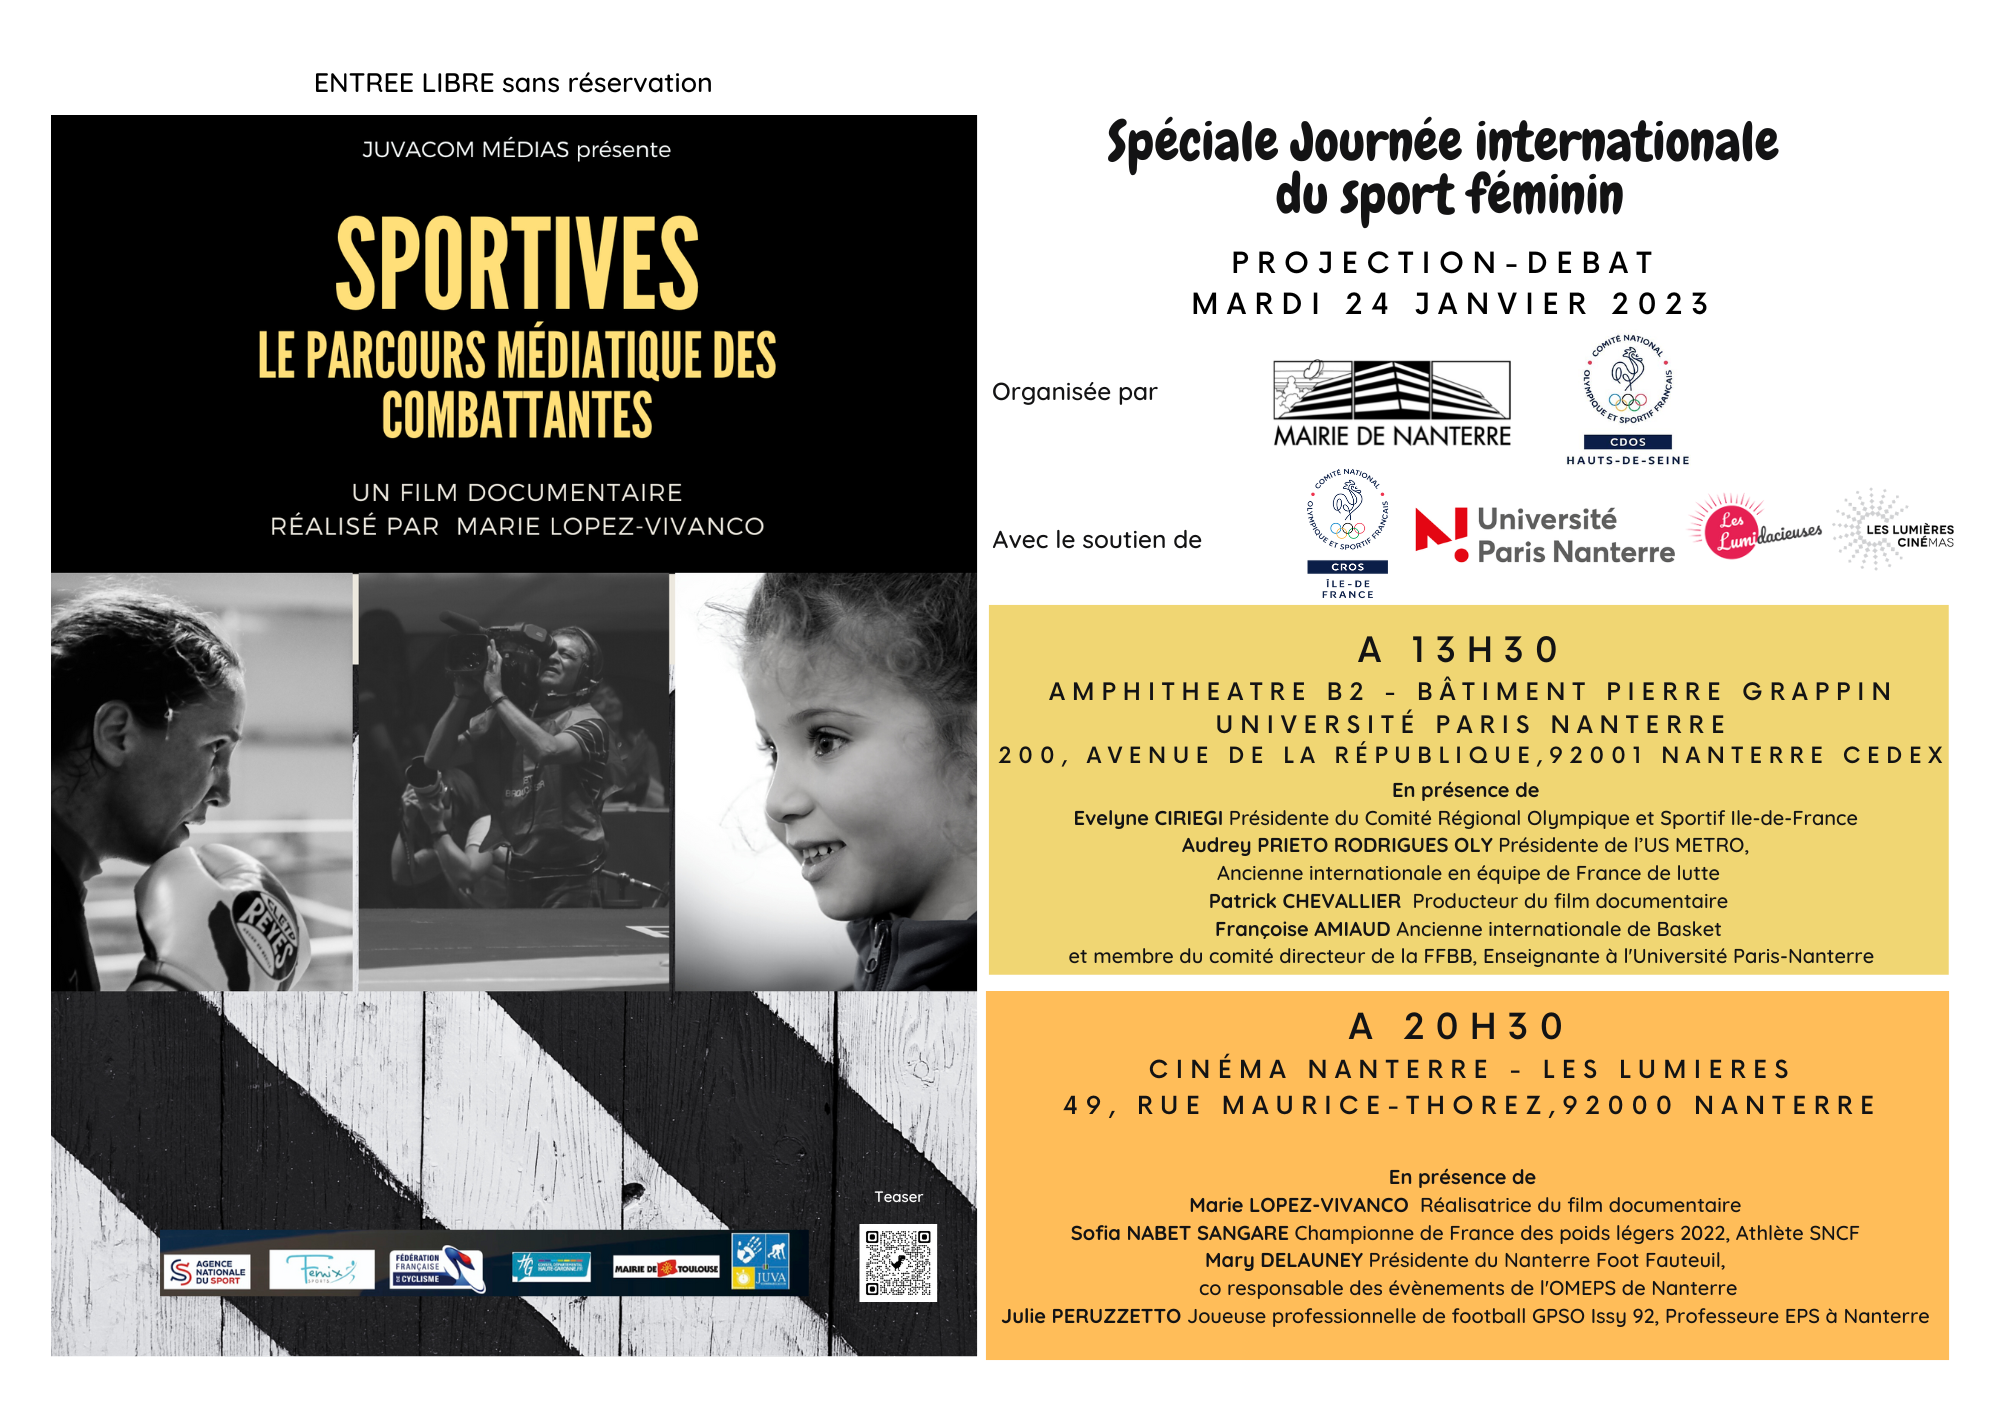 Evènement Gratuit - Double Projection / Débat du film "Sportives" le Mardi 24 janvier - Journée Internationale du Sport Féminin